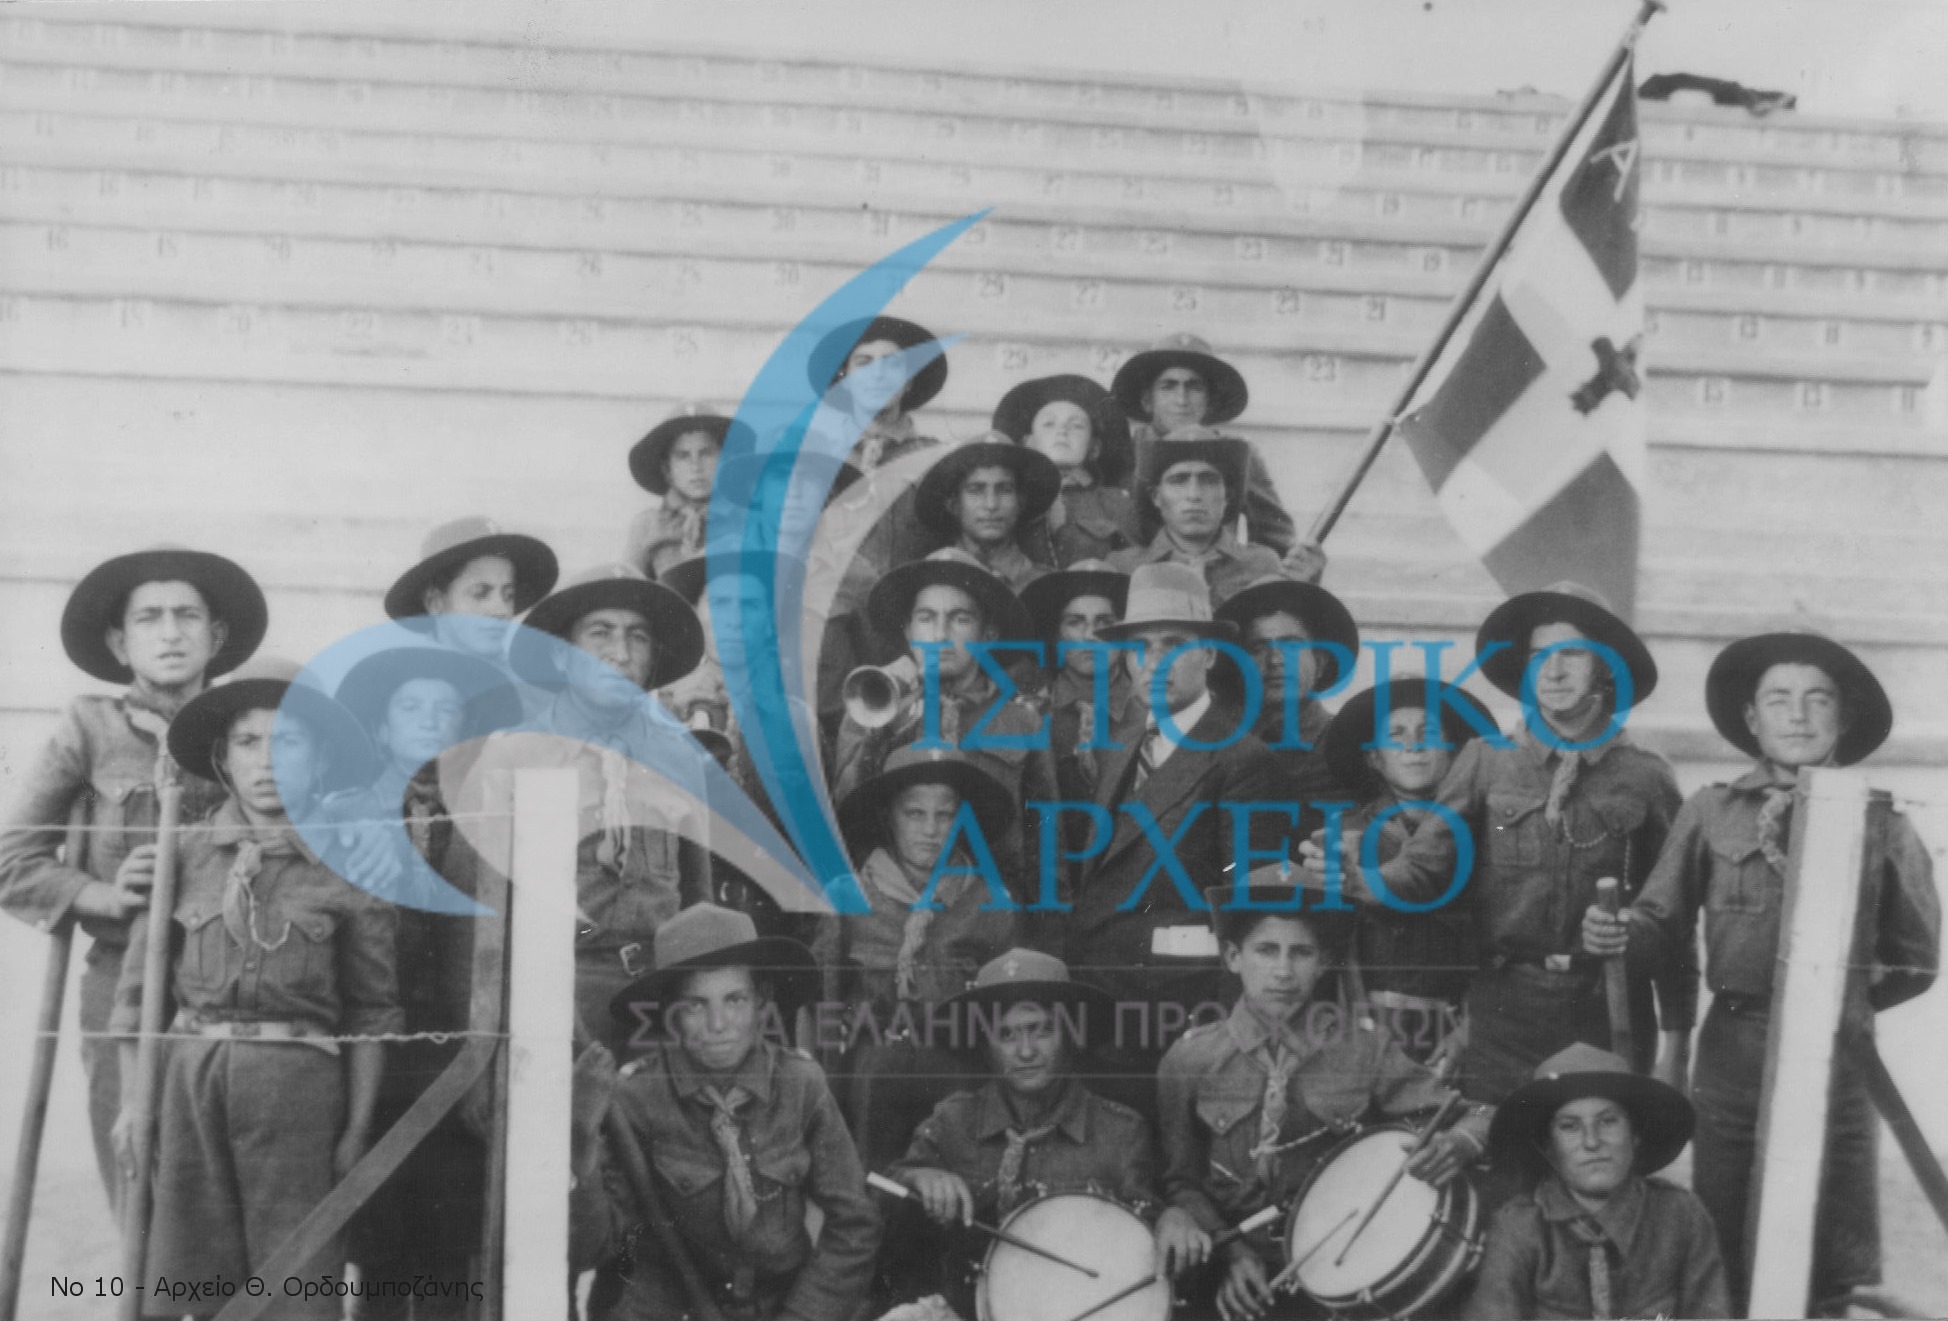 Η Ομάδα από τον Άβαντα Έβρου στο στάδιο της Κομοτηνής για τους Πανθρακικούς Αγώνες το 1936 μαζί με τον δάσκαλο και αρχηγό τους Σ. Παναγιώτου.